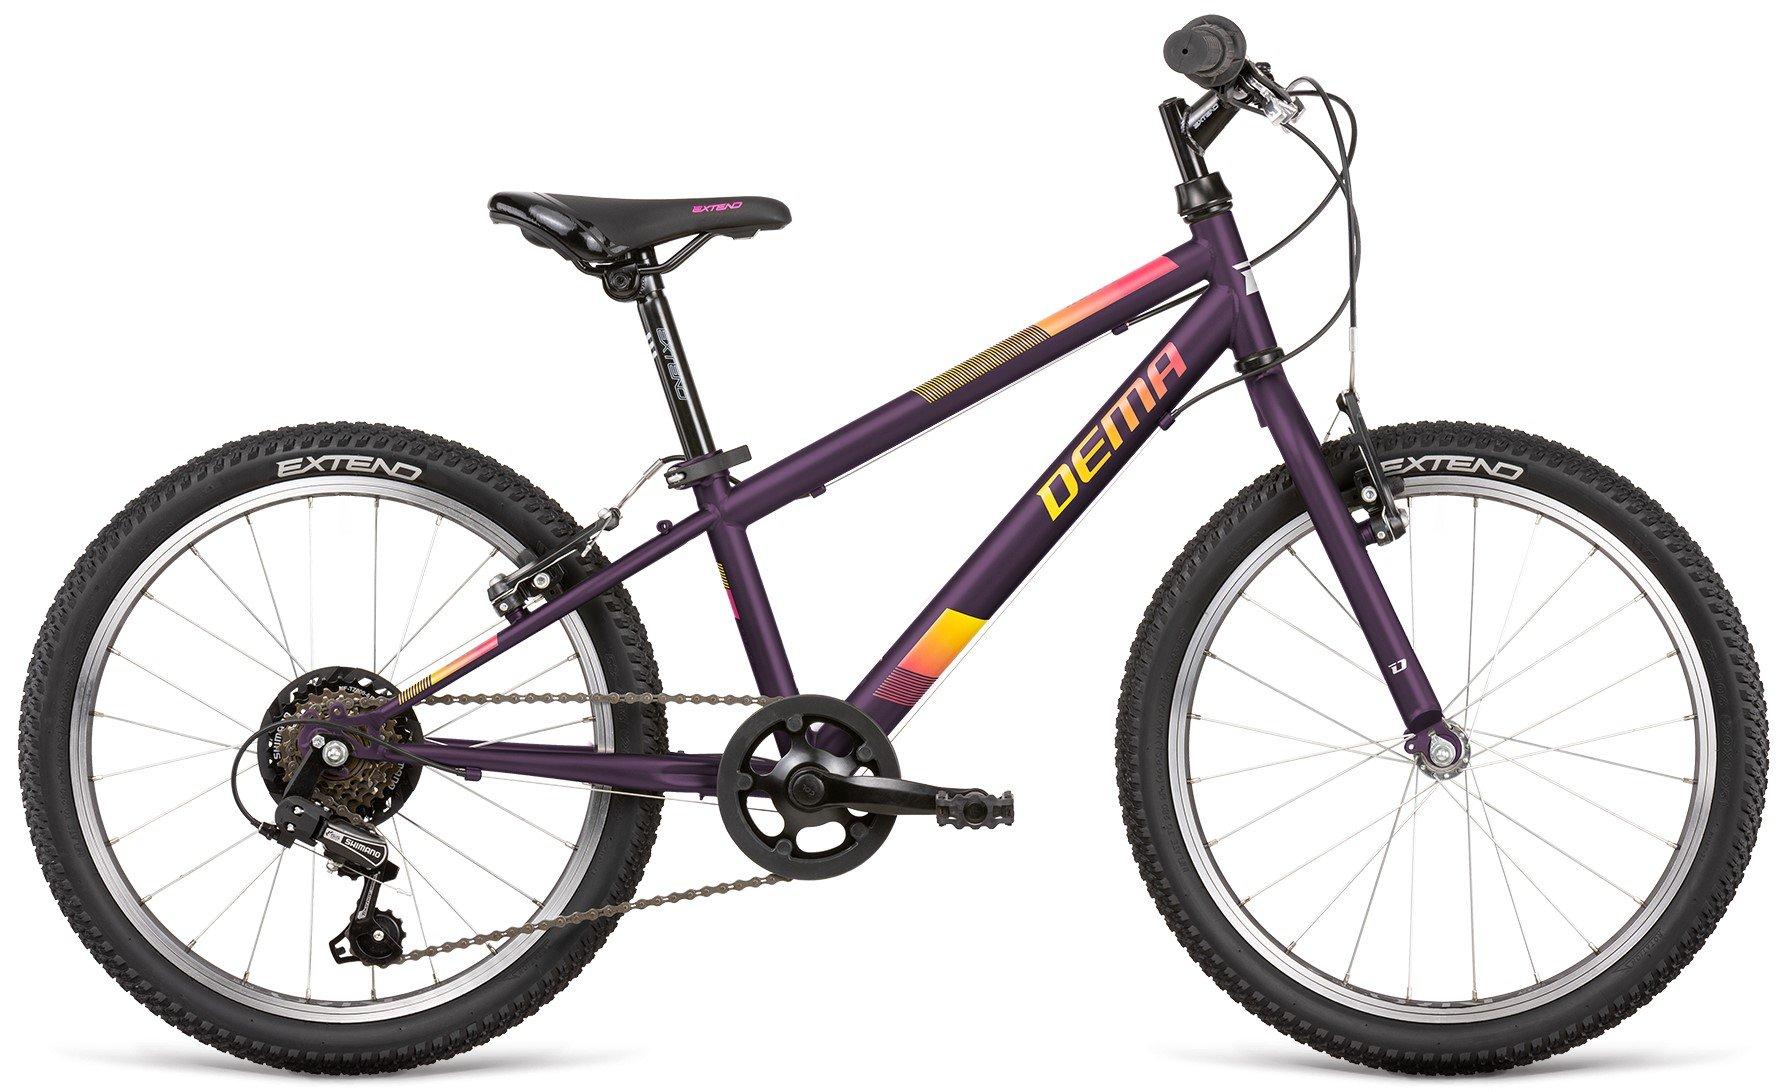 Detský bicykel Dema Roxie 20 Veľkosť: 20 inch. wheel